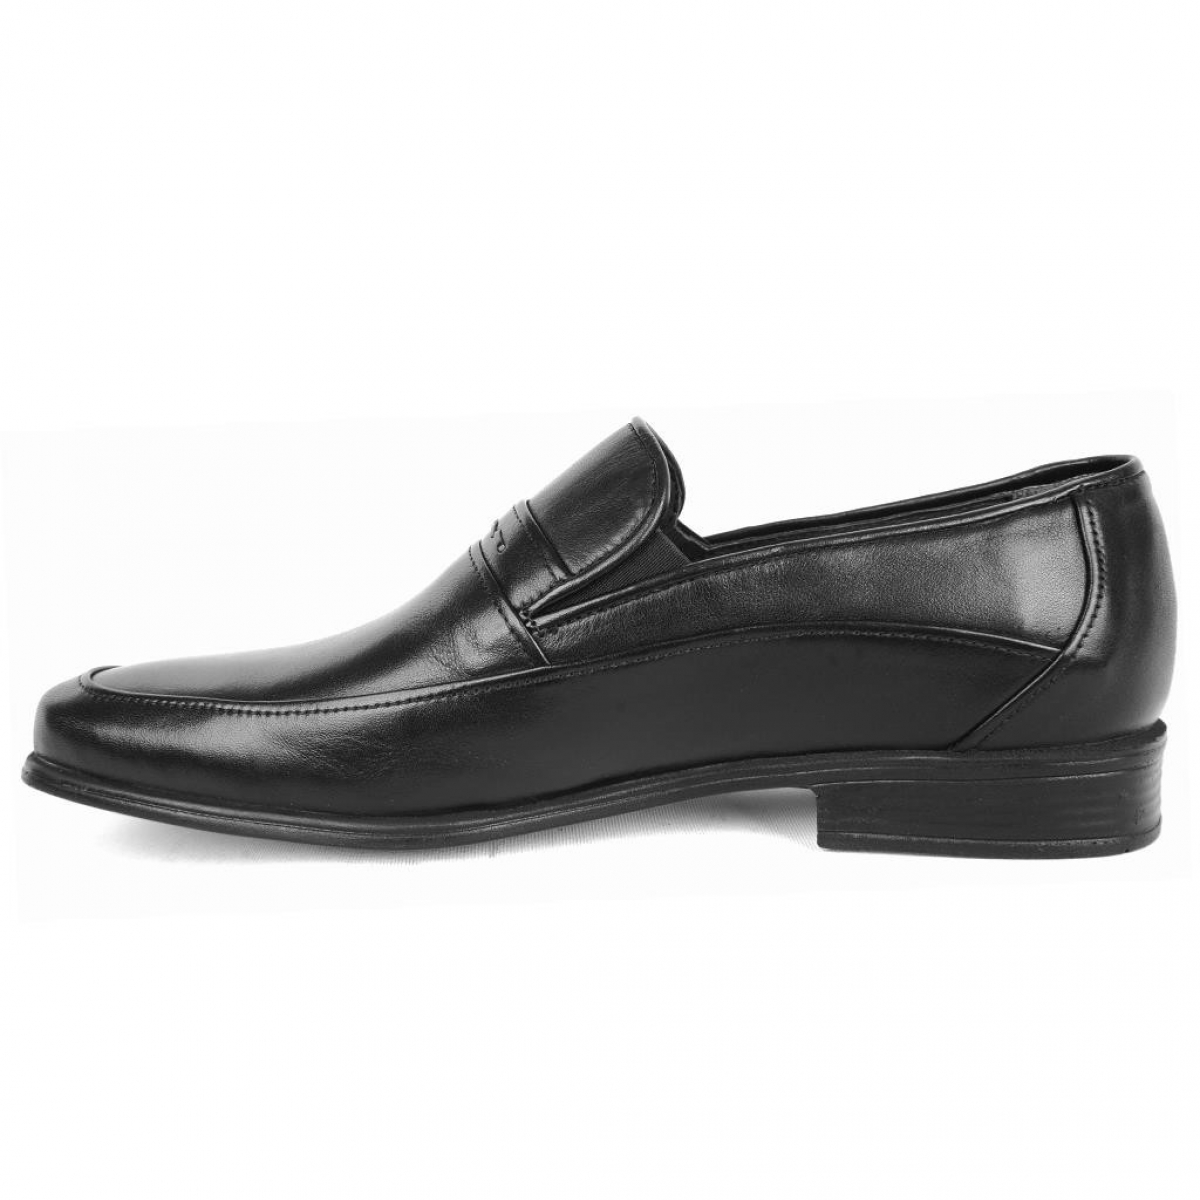 Flo 2030 Softy Siyah %100 Deri Erkek Klasik Ayakkabı. 2